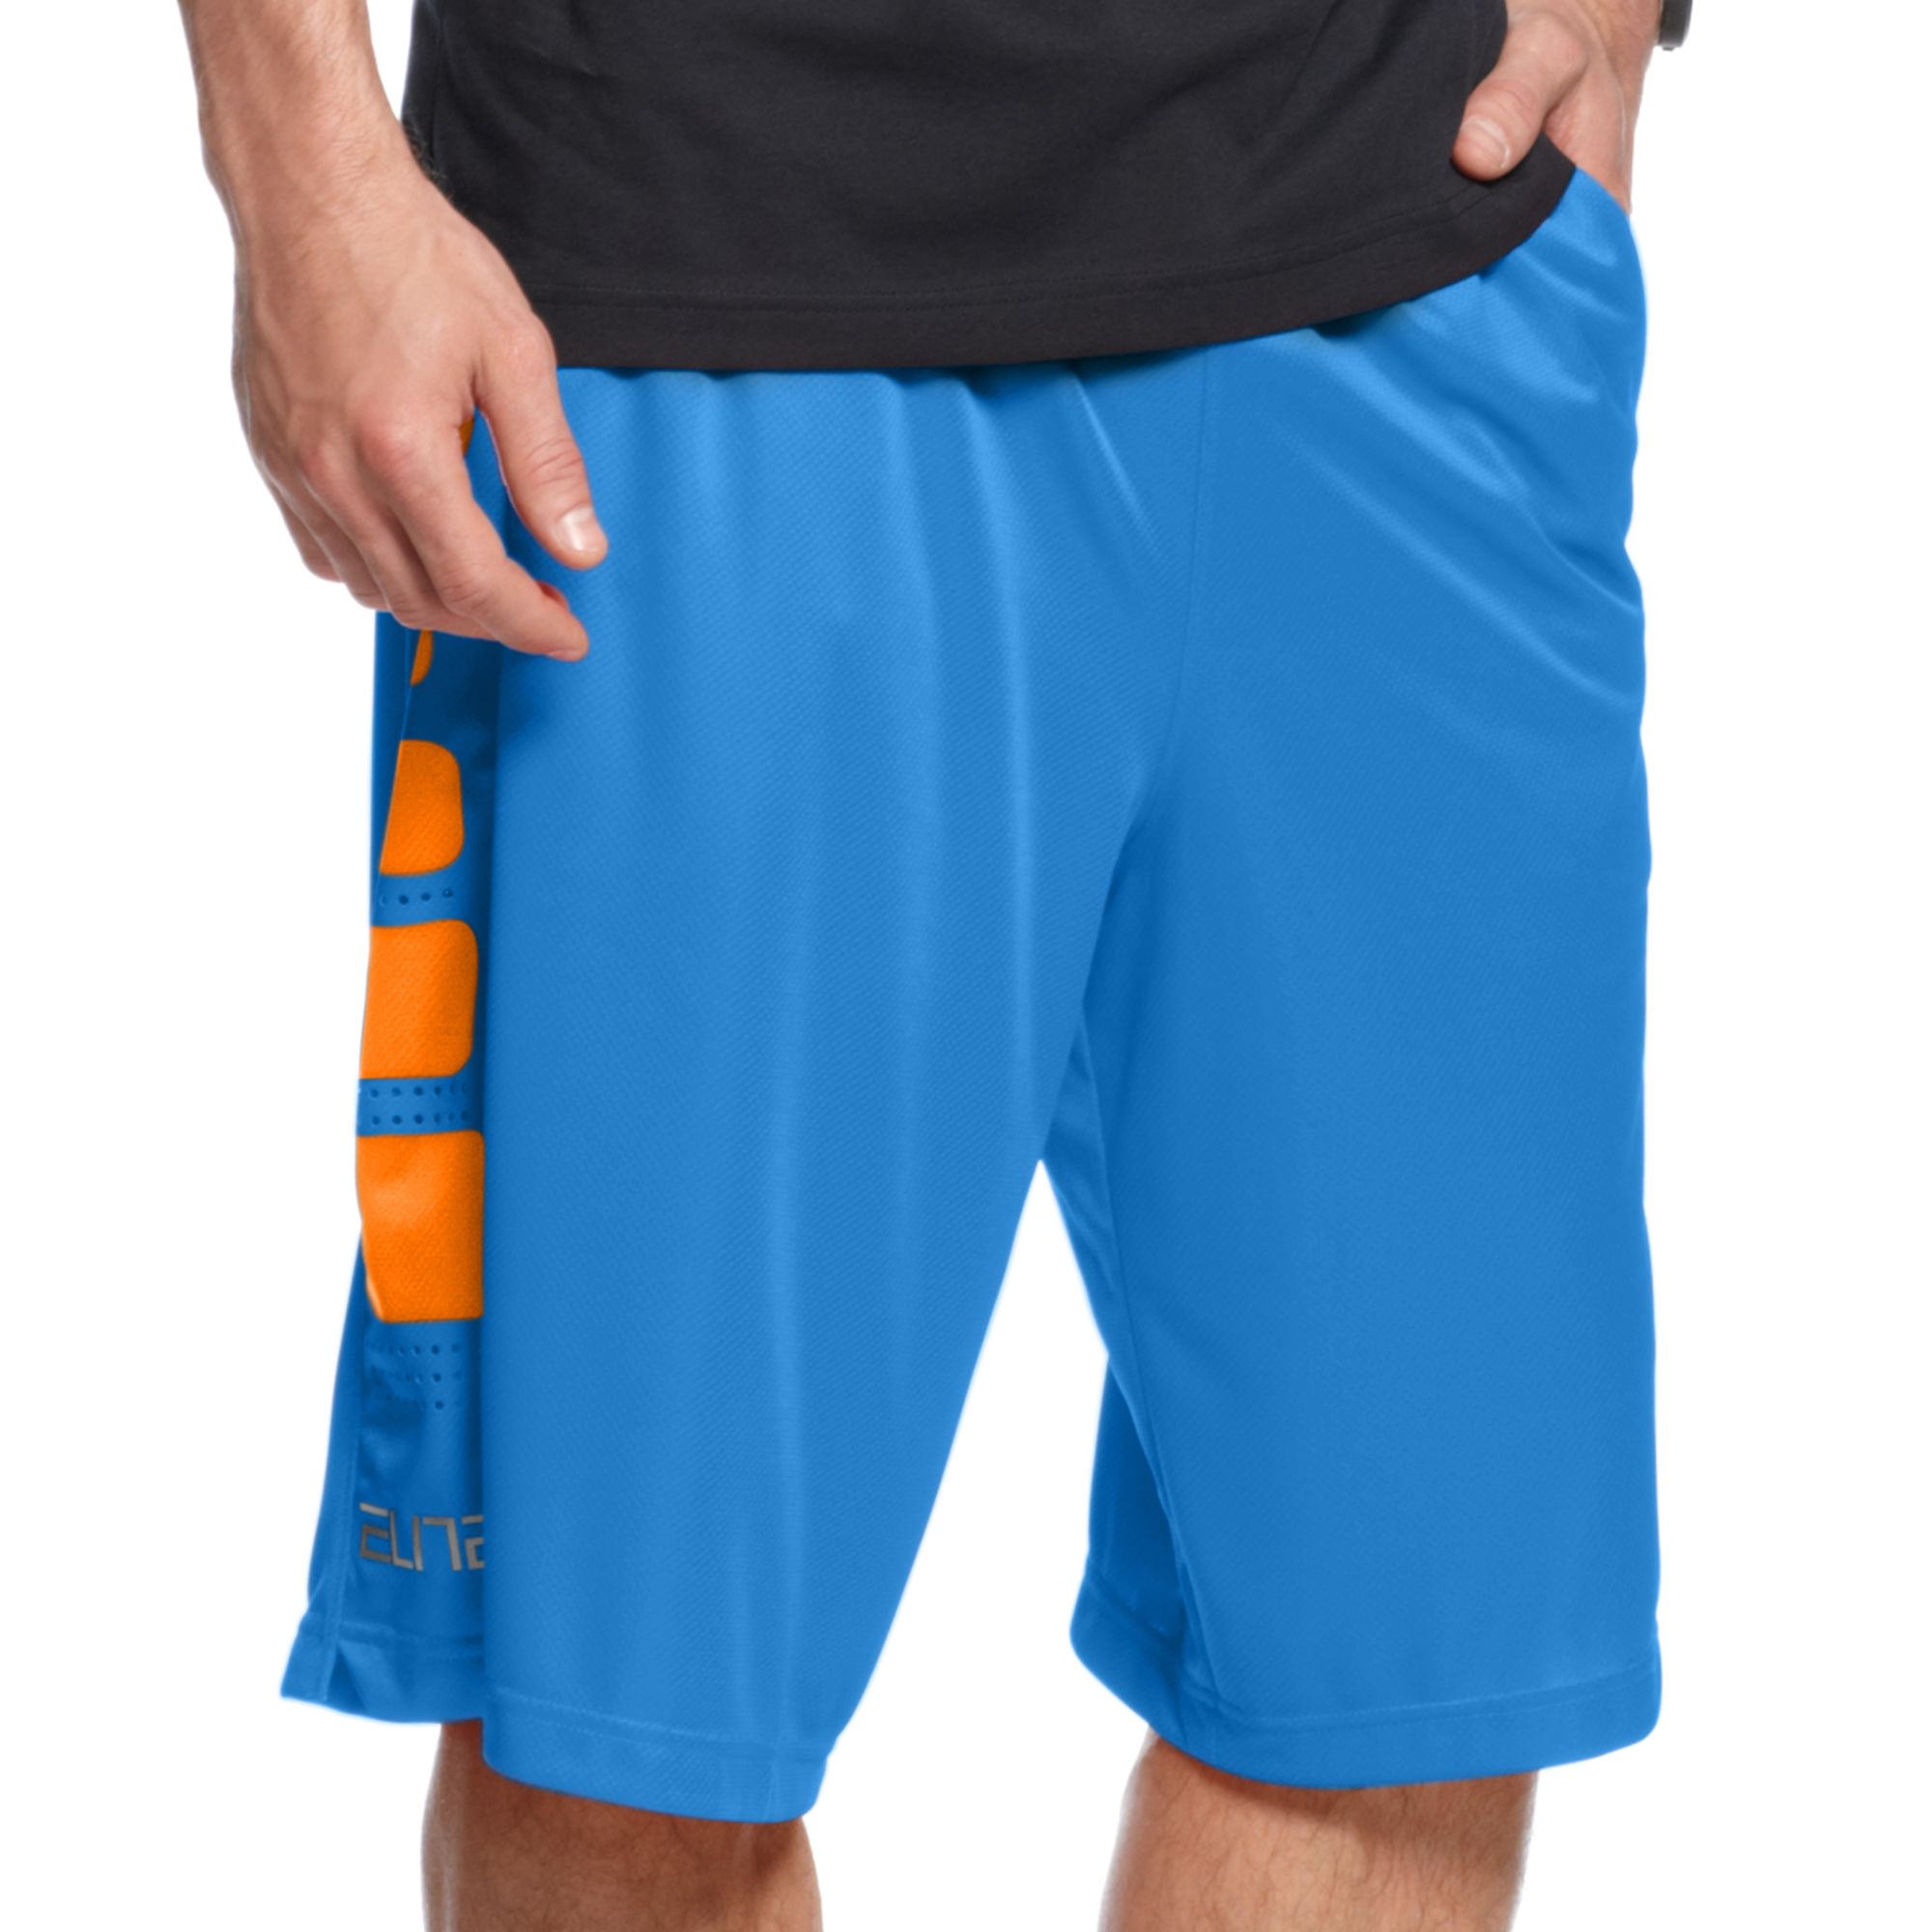 nike blue and orange shorts